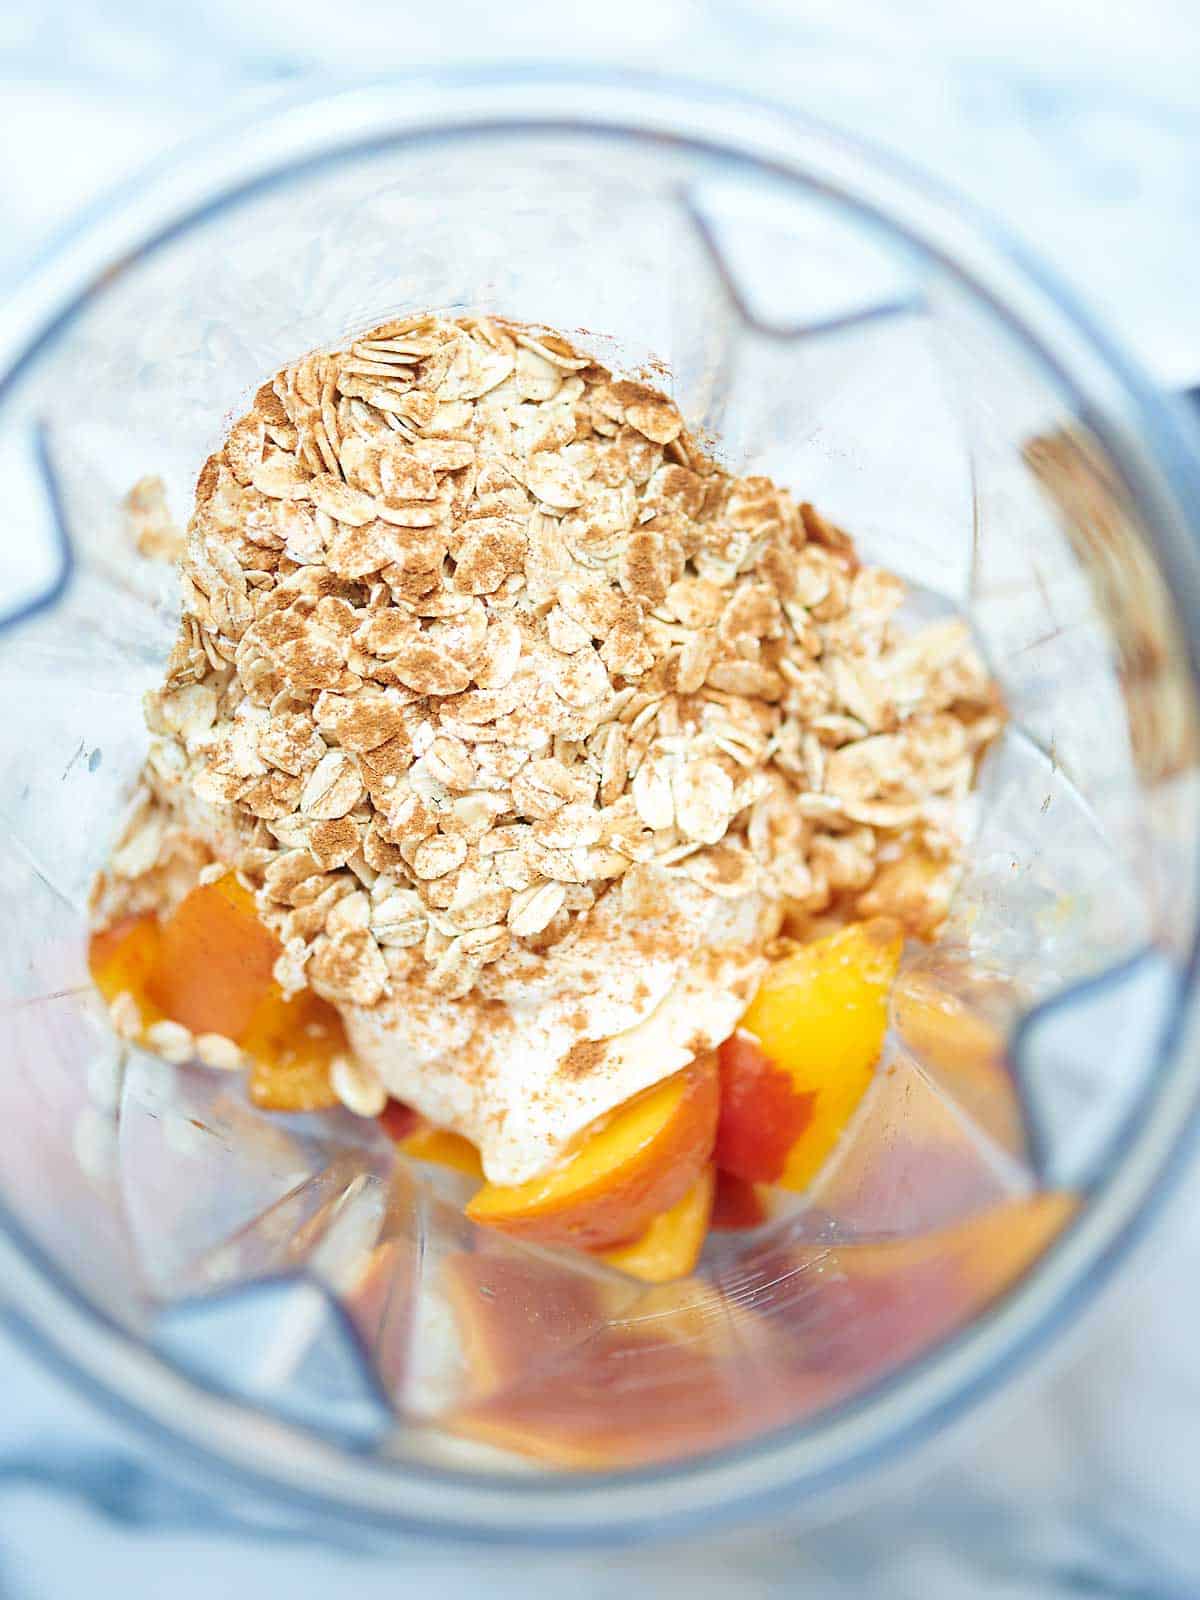 Healthy Peach Cobbler Smoothie - Vegetarian & Gluten Free